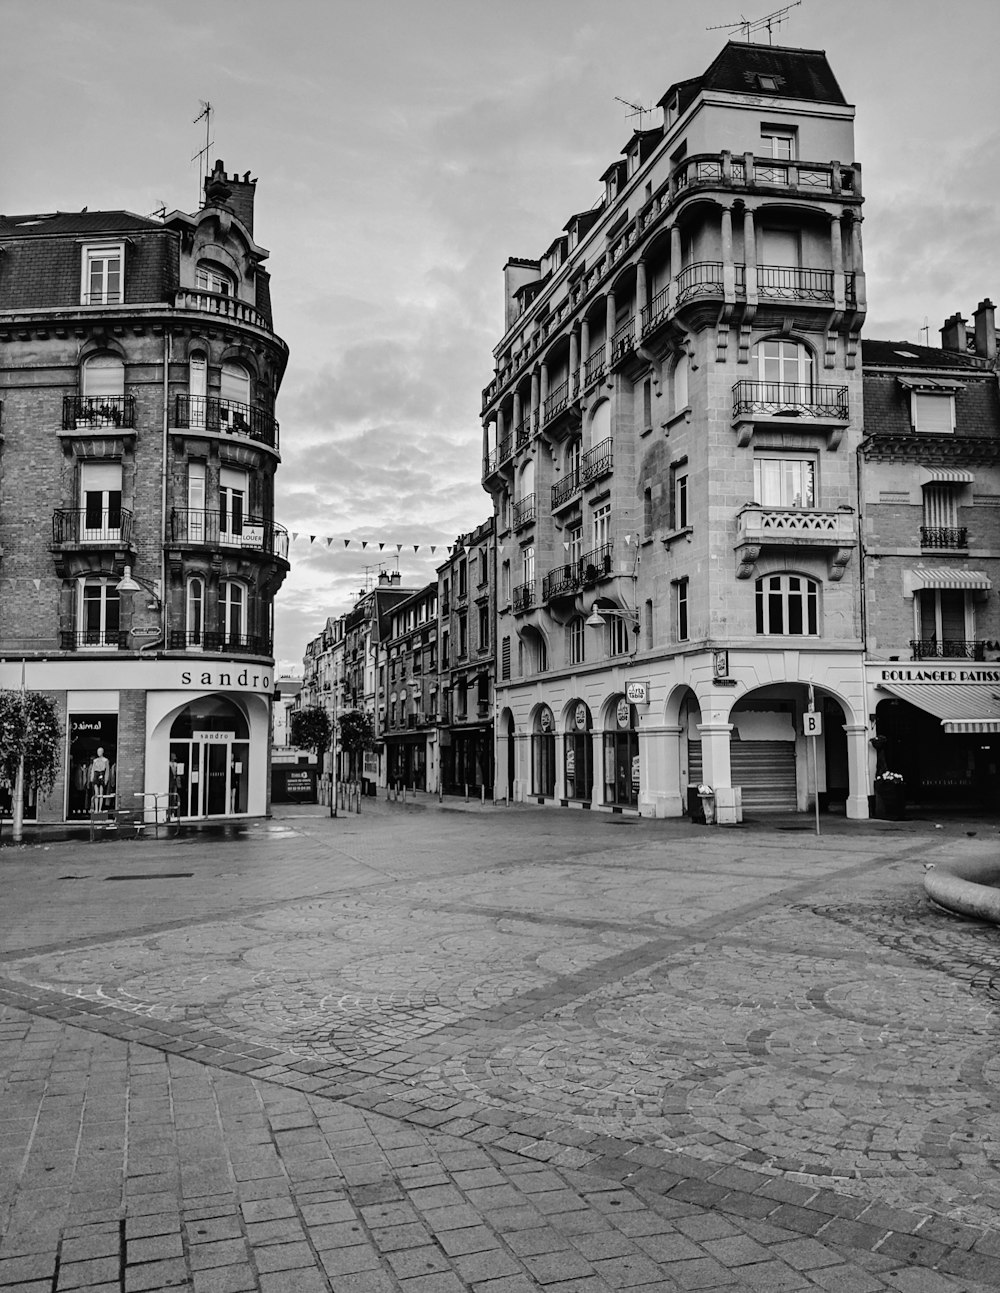 Una foto en blanco y negro de una plaza de la ciudad